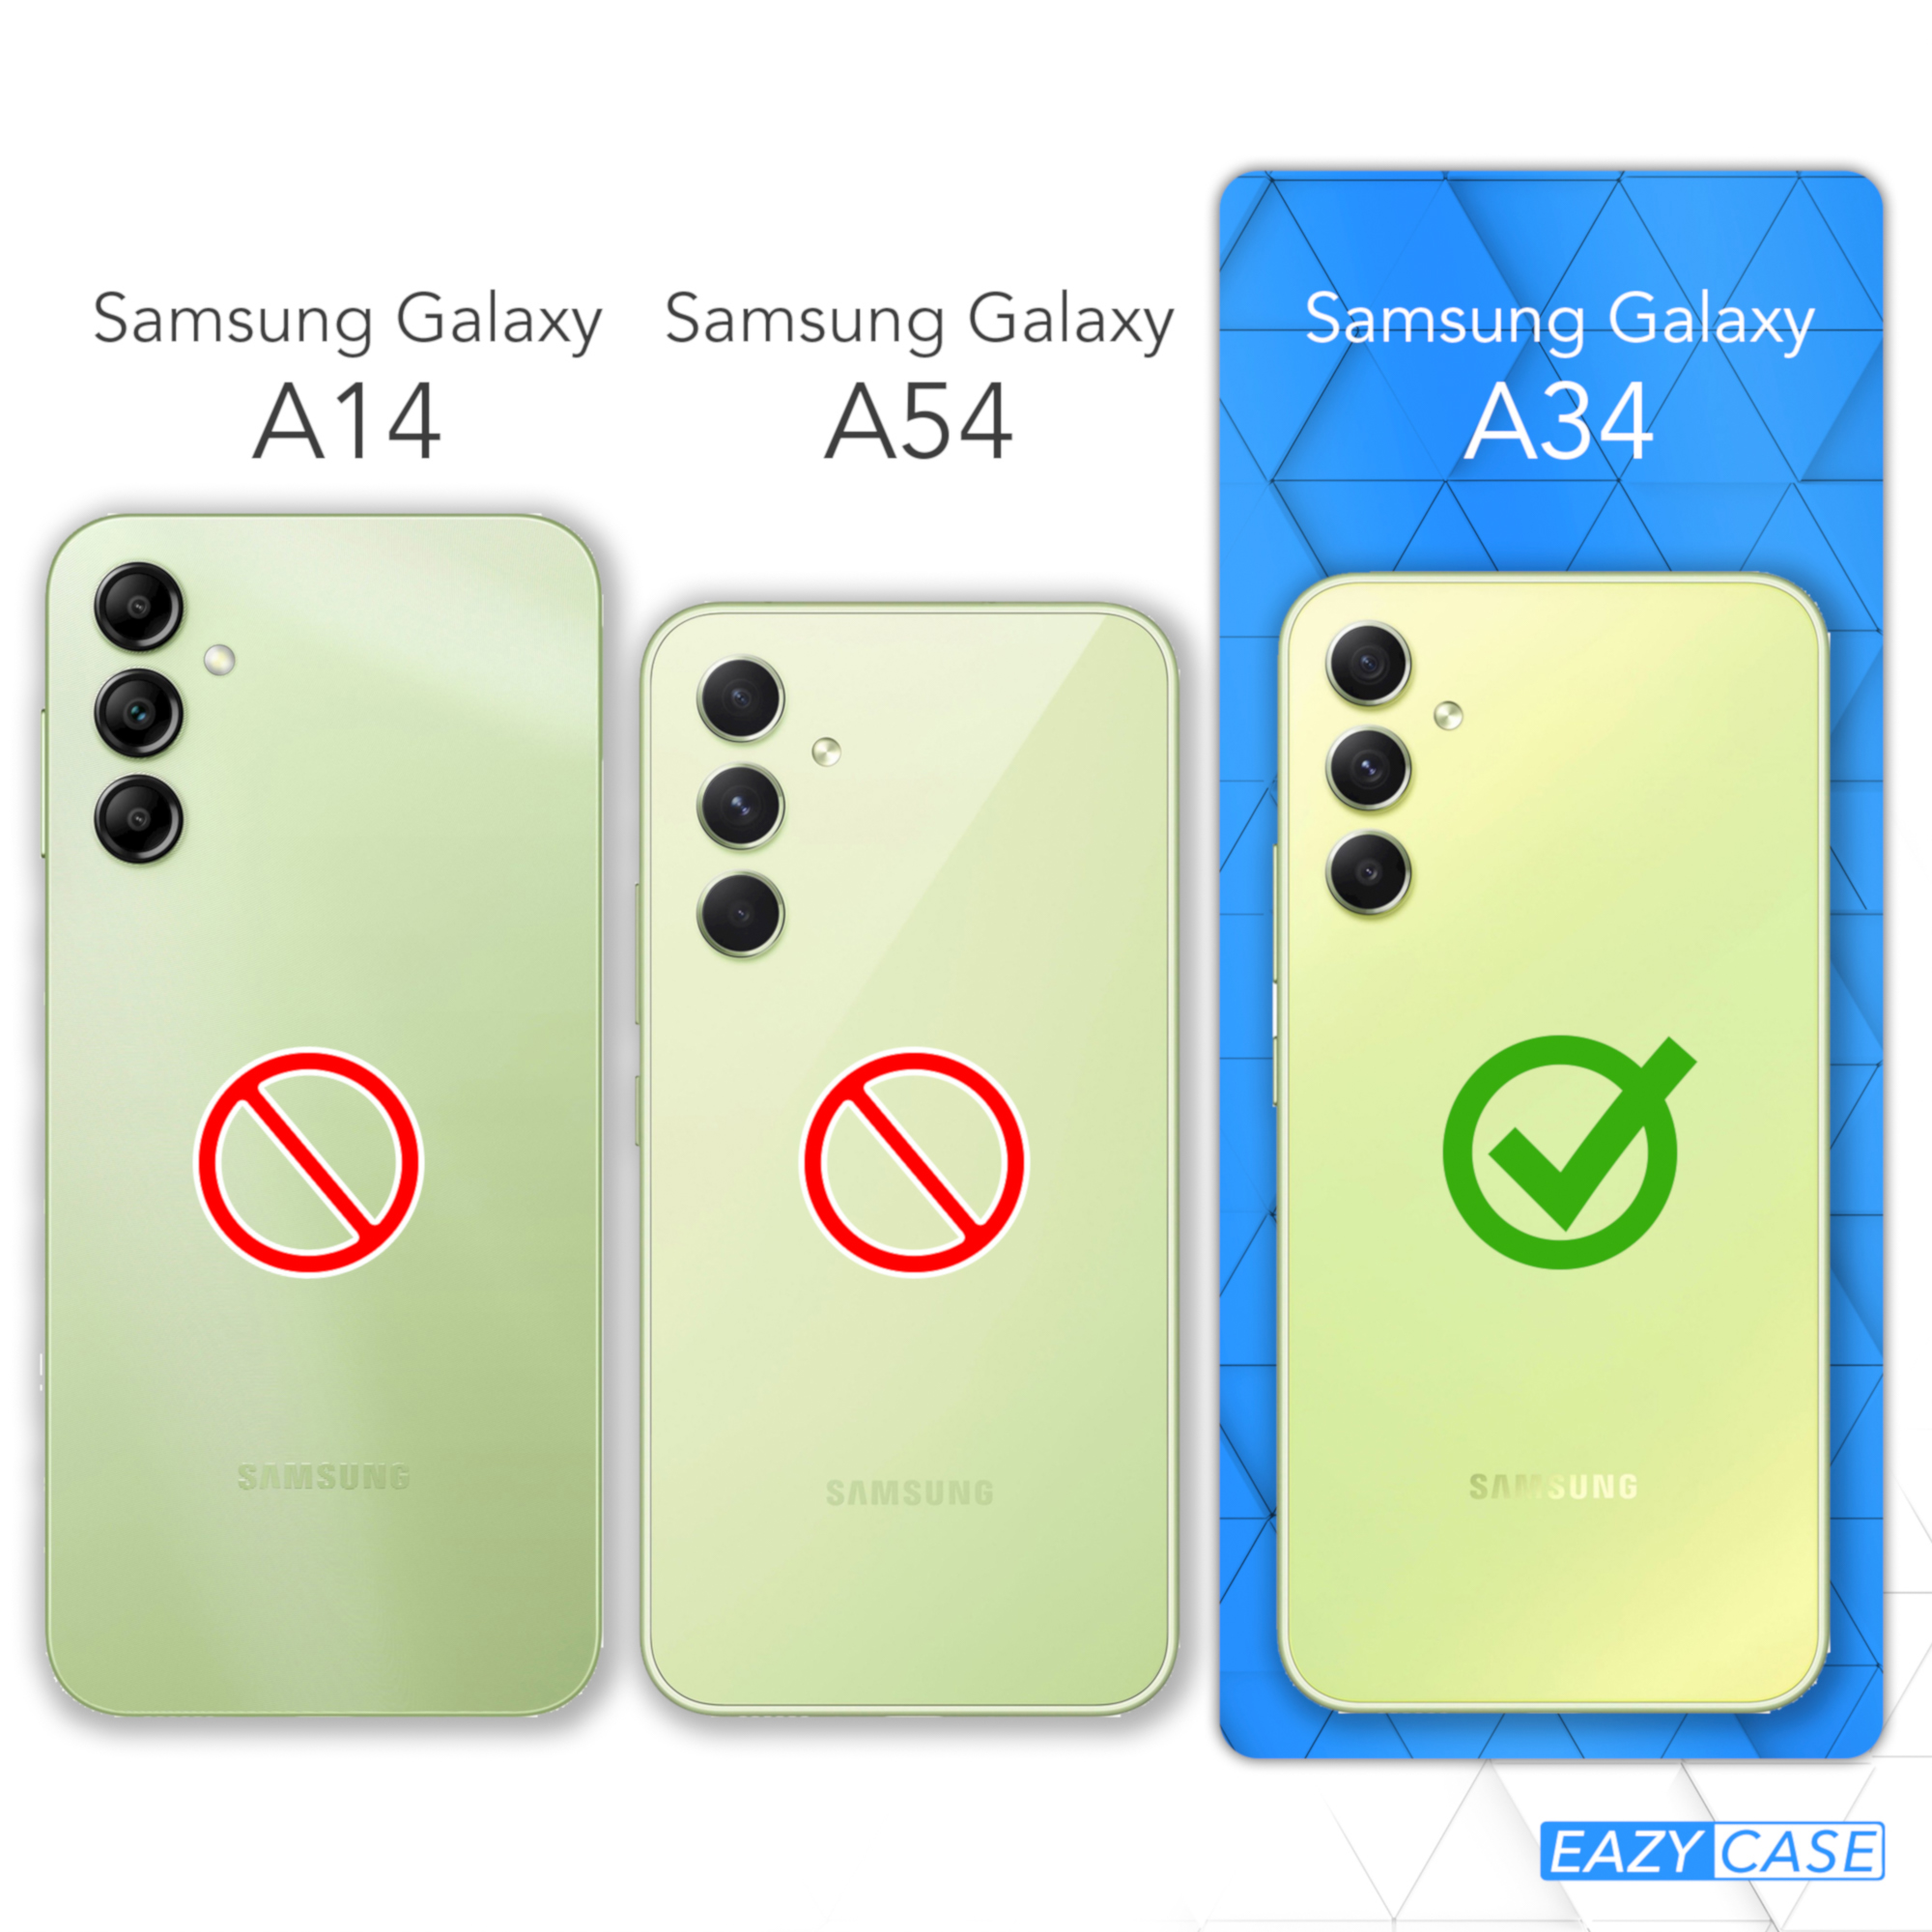 EAZY CASE Premium Samsung, A34, Handycase, Galaxy Mint Backcover, Silikon Grün